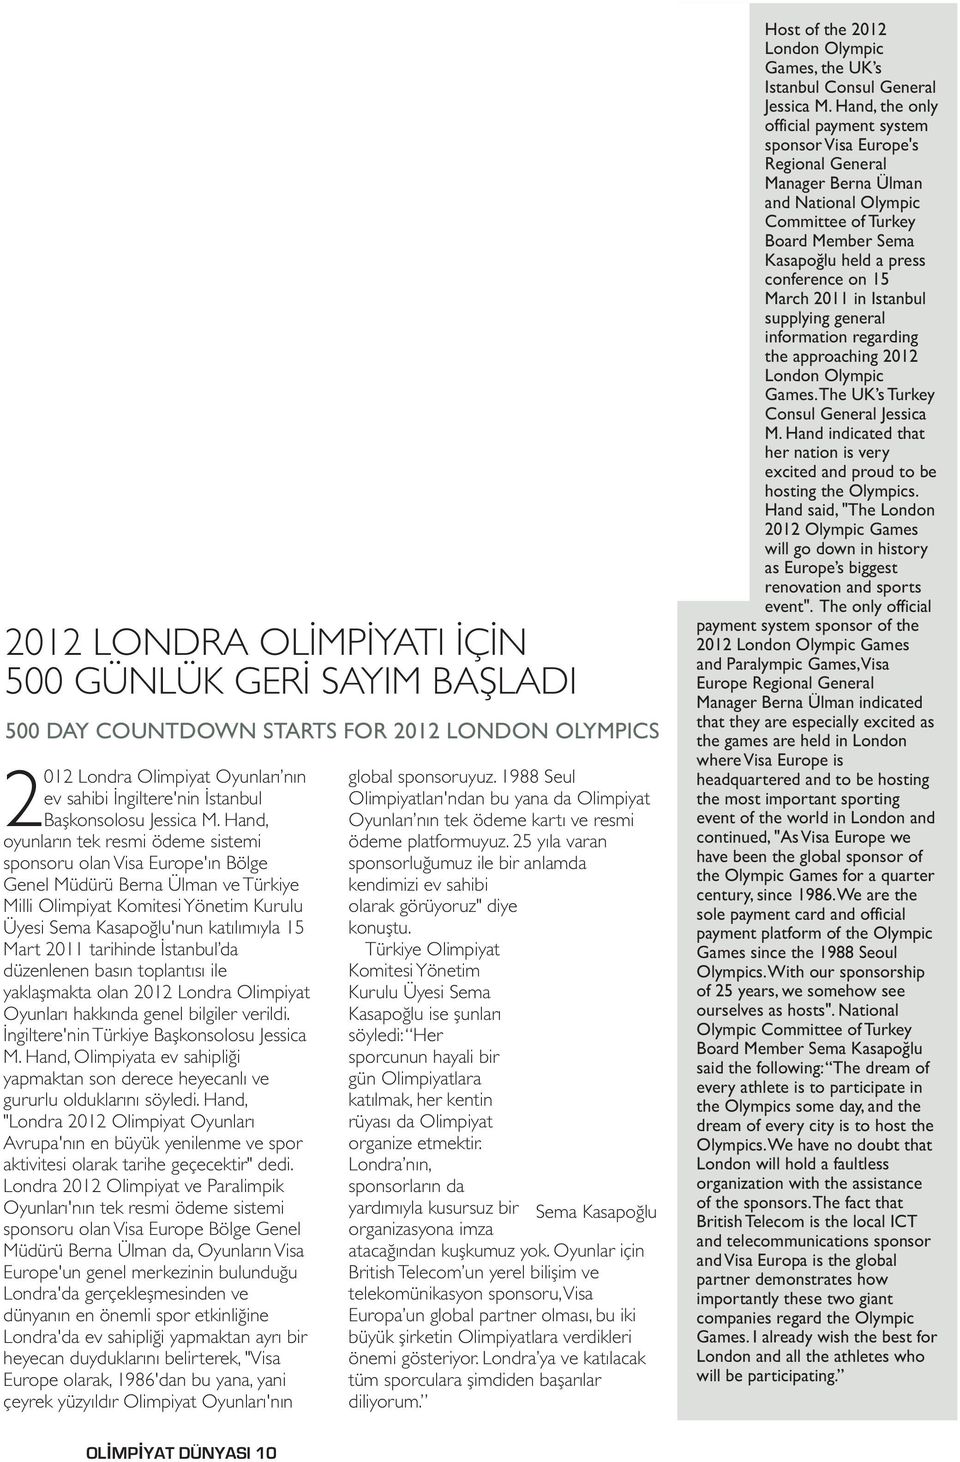 2011 tarihinde İstanbul da düzenlenen basın toplantısı ile yaklaşmakta olan 2012 Londra Olimpiyat Oyunları hakkında genel bilgiler verildi. İngiltere'nin Türkiye Başkonsolosu Jessica M.